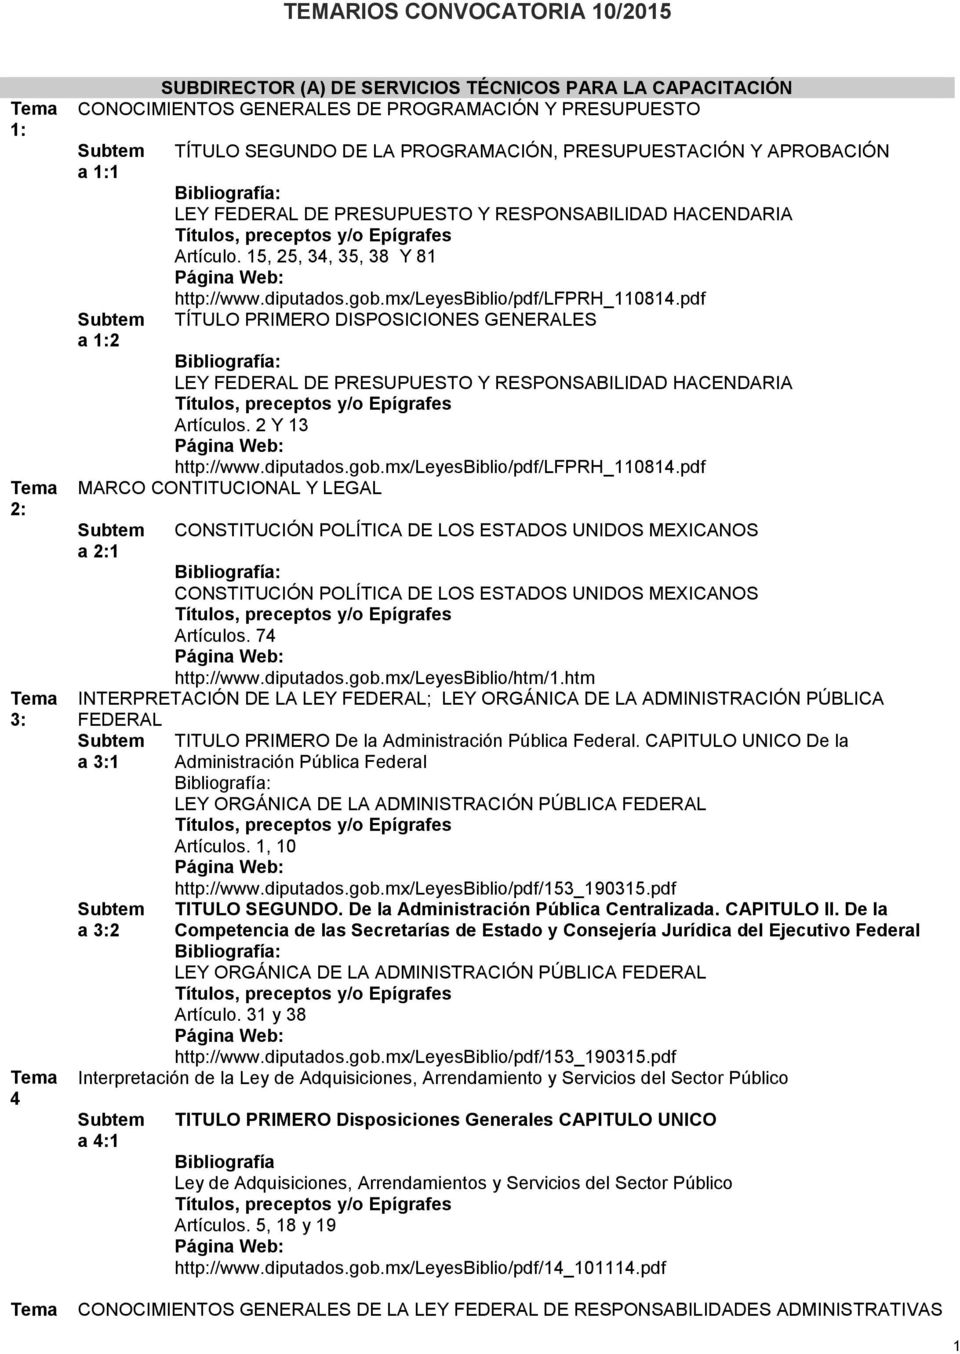 pdf TÍTULO PRIMERO DISPOSICIONES GENERALES : LEY FEDERAL DE PRESUPUESTO Y RESPONSABILIDAD HACENDARIA Artículos. 2 Y 13 : http://www.diputados.gob.mx/leyesbiblio/pdf/lfprh_110814.